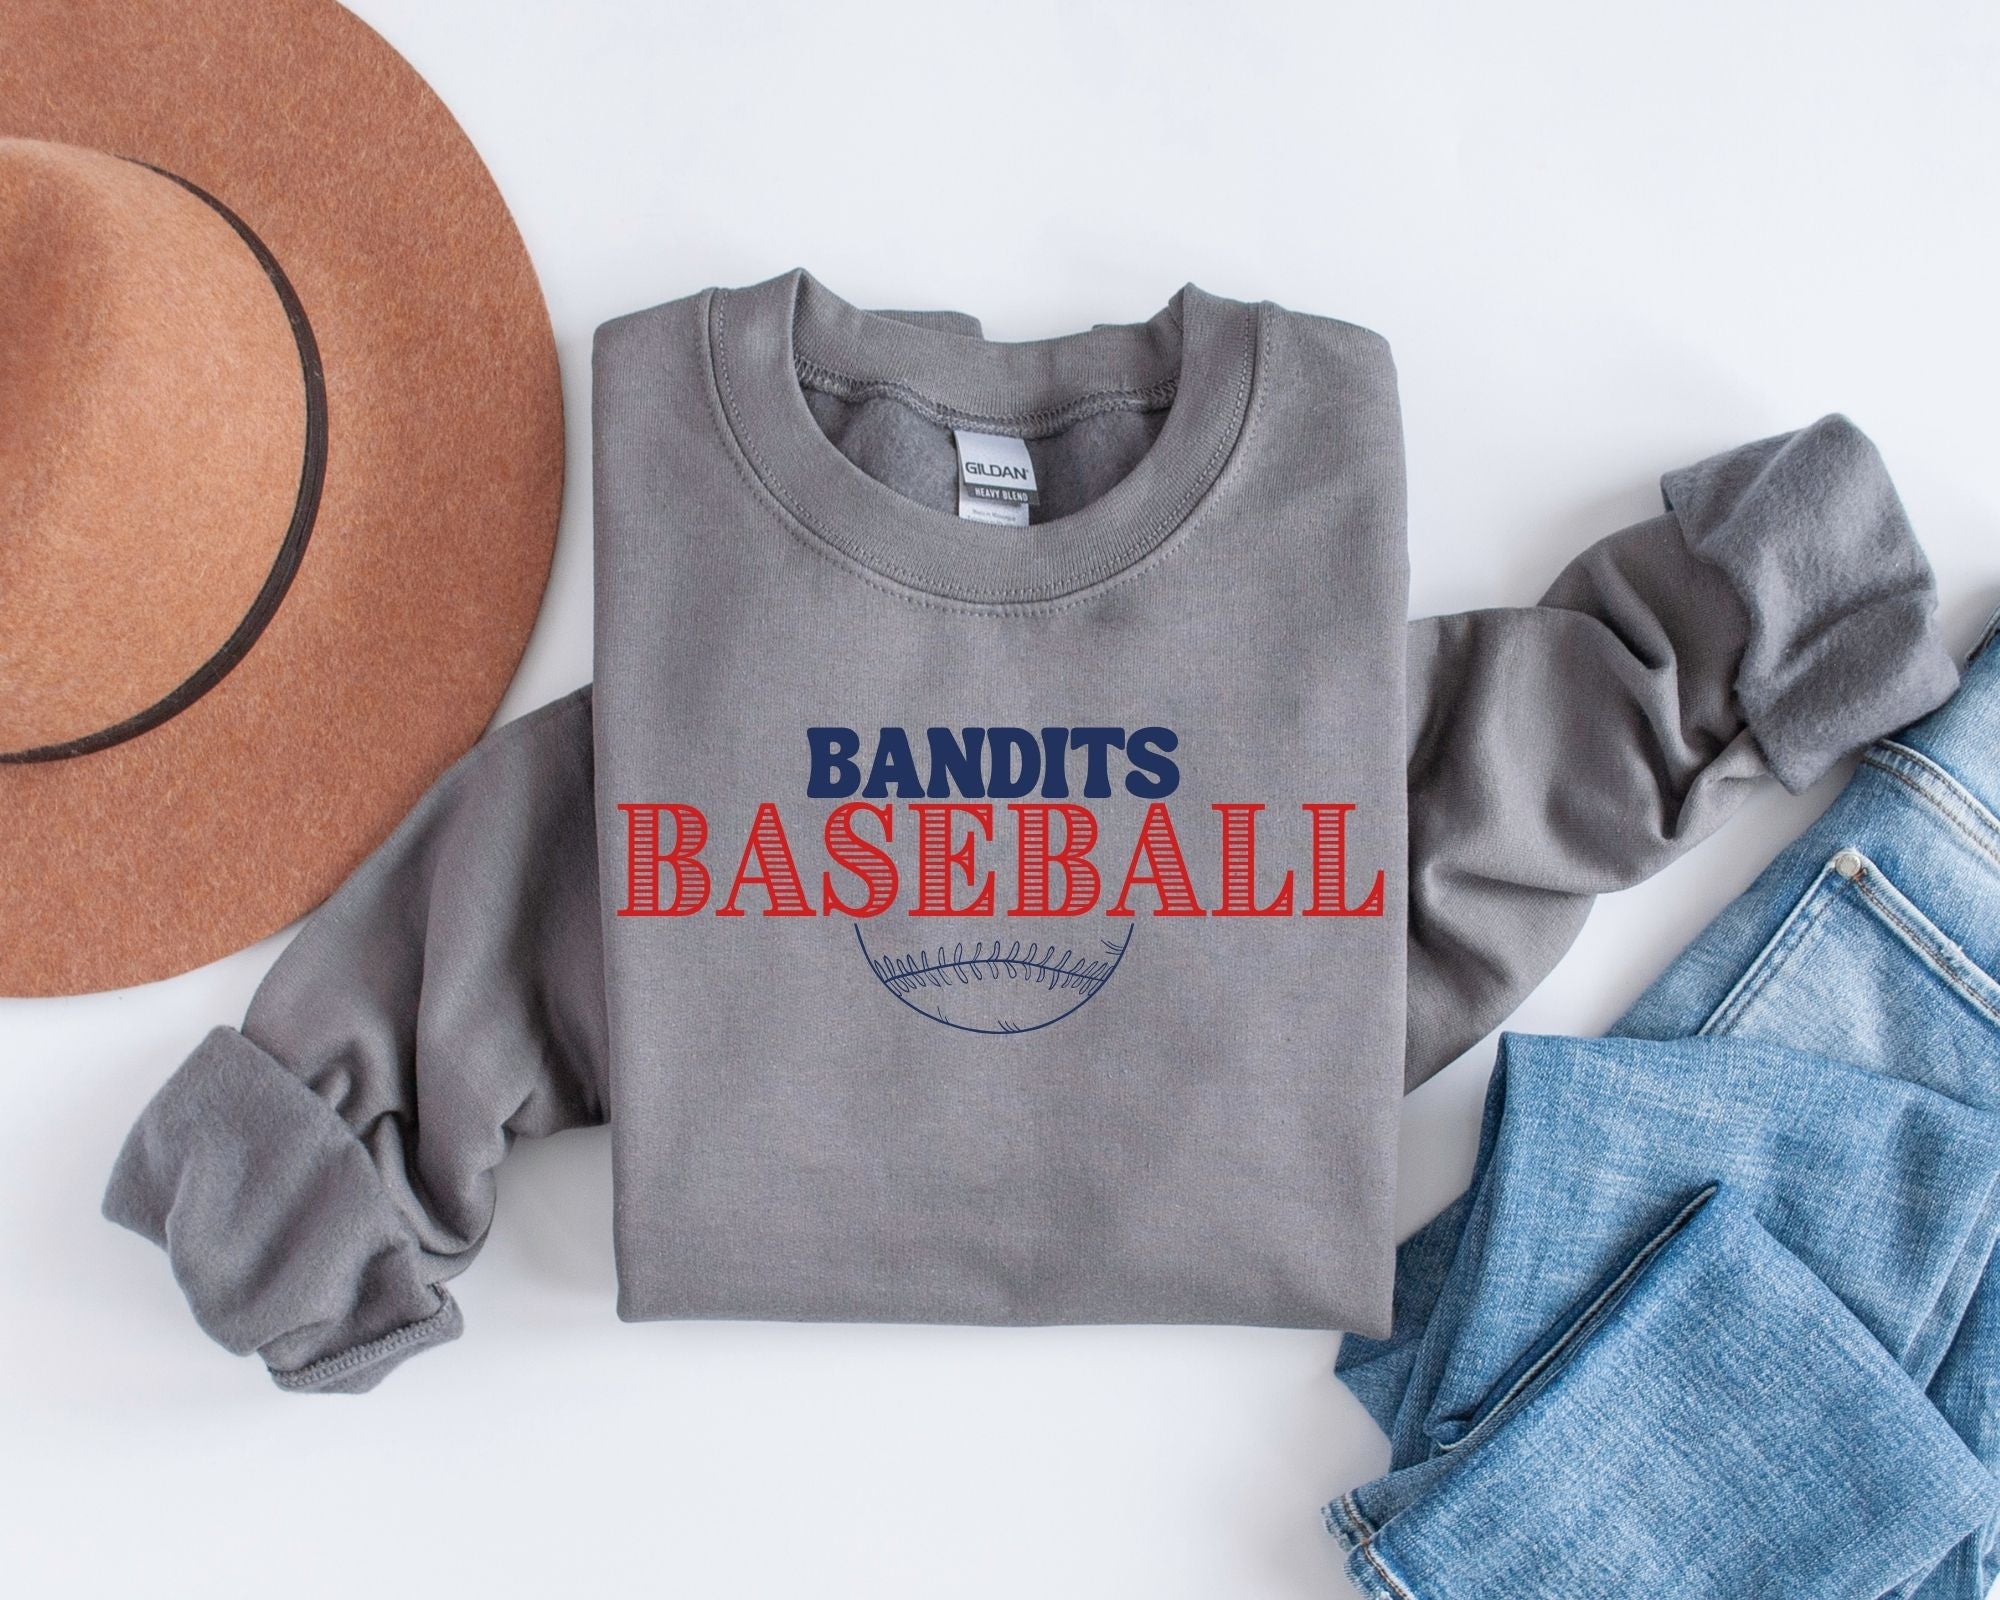 Bandits Baseball Vintage Sweatshirt